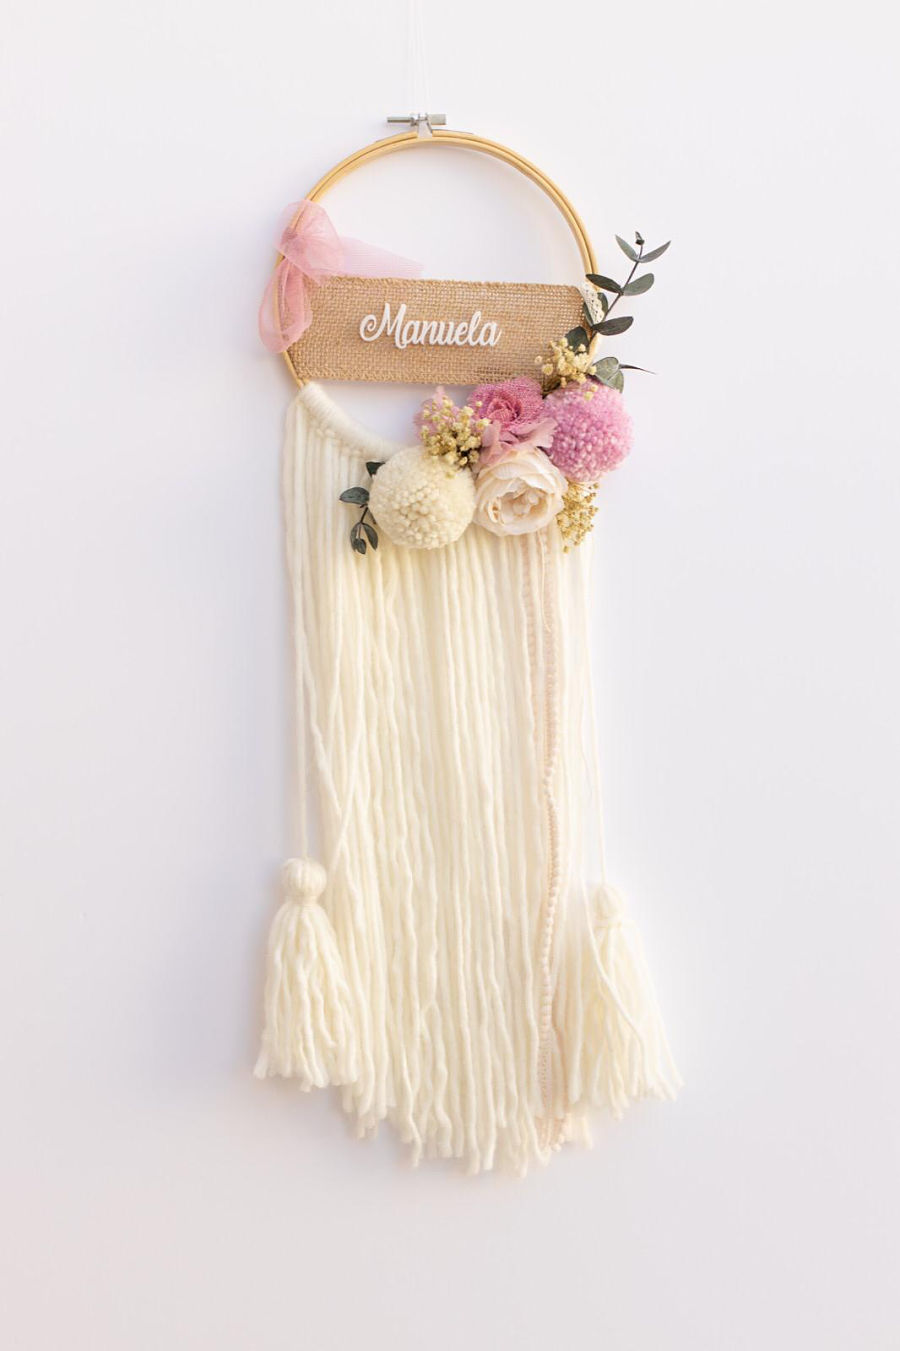 Atrapasueños personalizado y decorado con pompones de lana hechos a mano y flores preservadas para regalos de los profes.